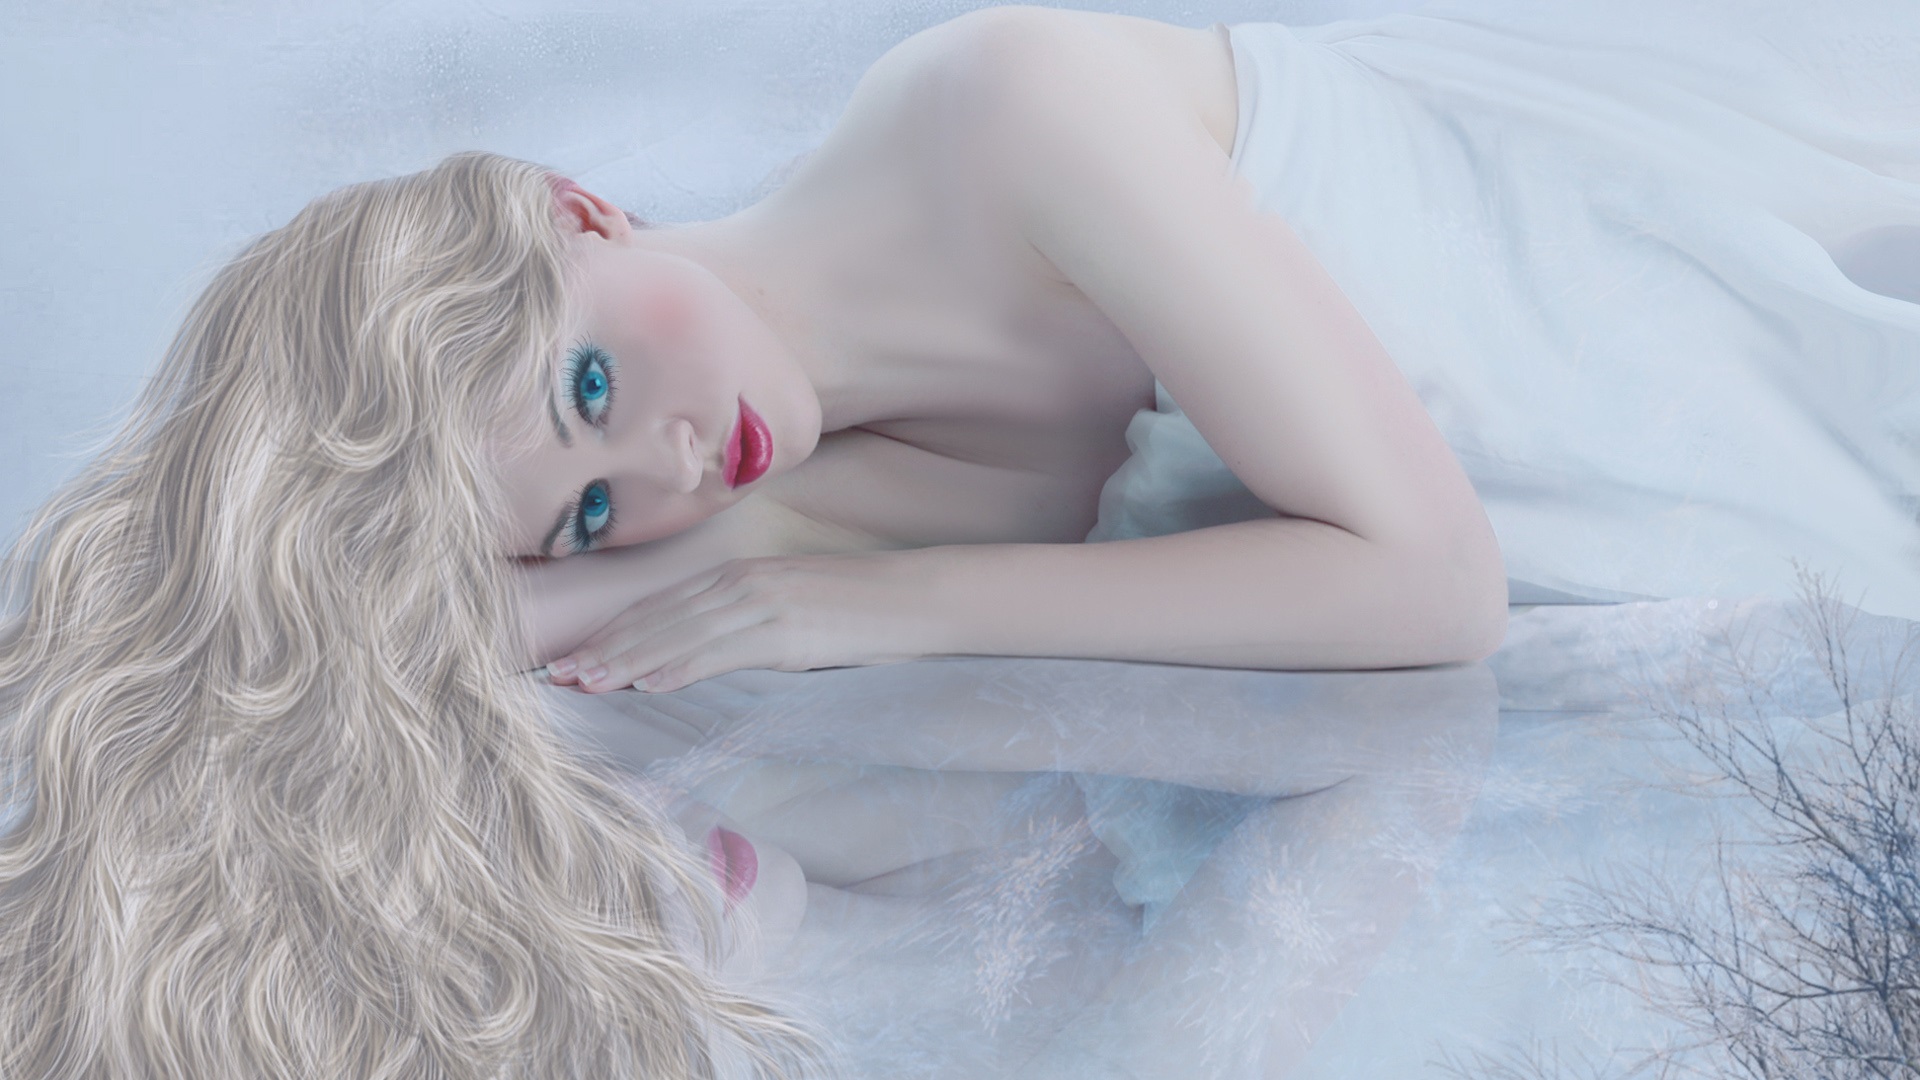 Blonde-girl-face-red-lips-white-dress-lying-bed_1920x1080.jpg